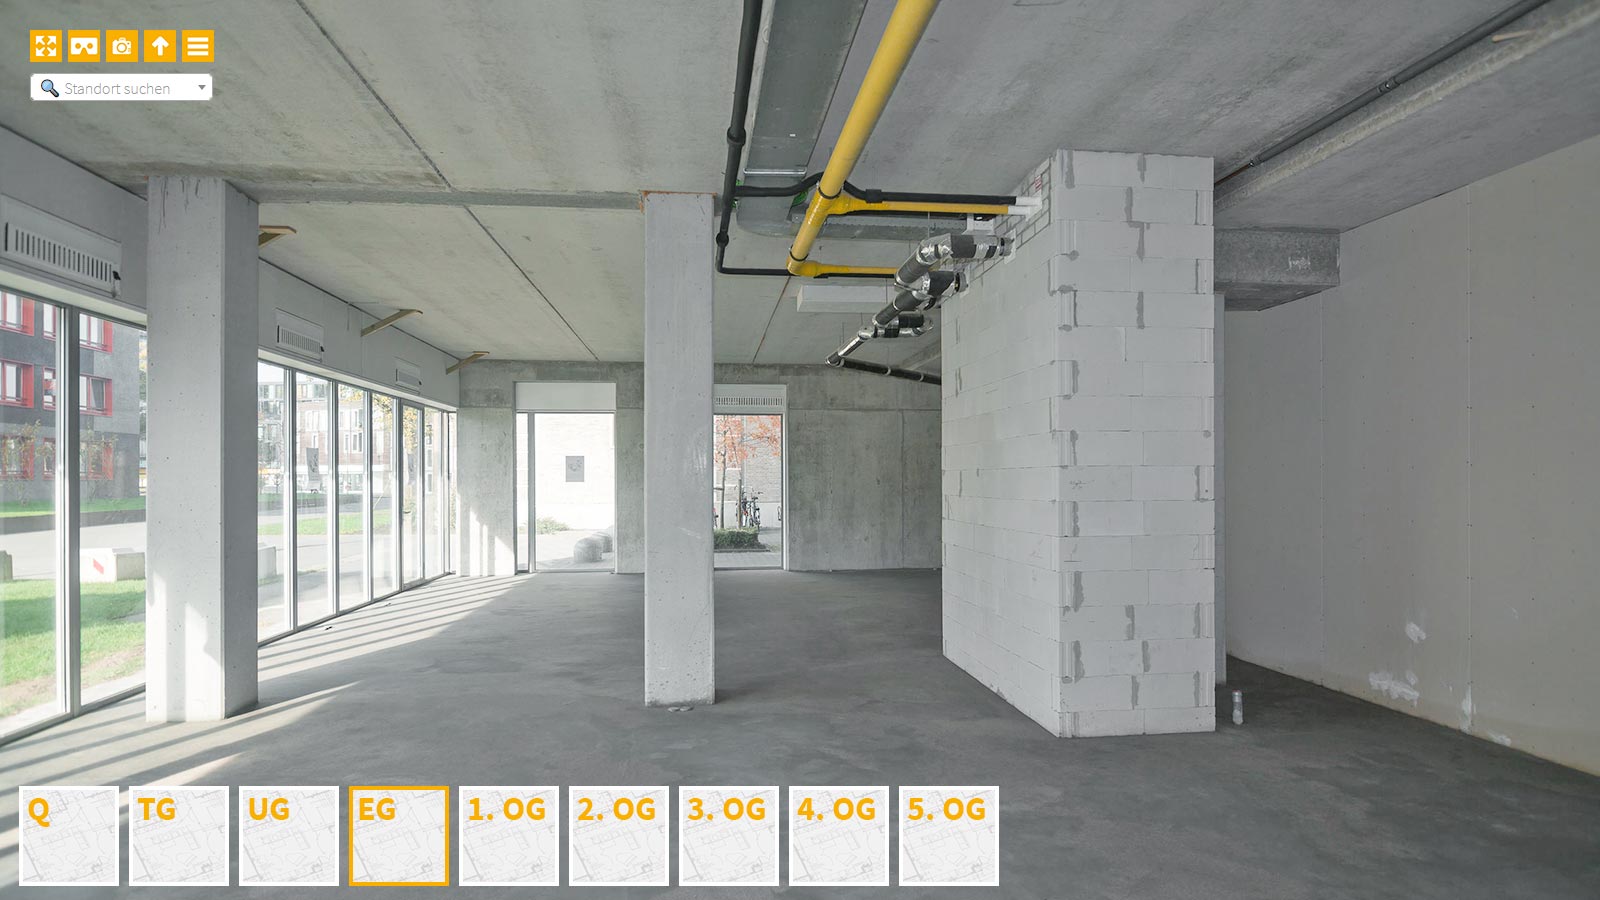 Baudokumentation 360 Grad bei gestörten Projekten in 


	


	


	


	


	


	


	


	


	


	Hannover









, Bilddokumentation als virtueller Rundgang